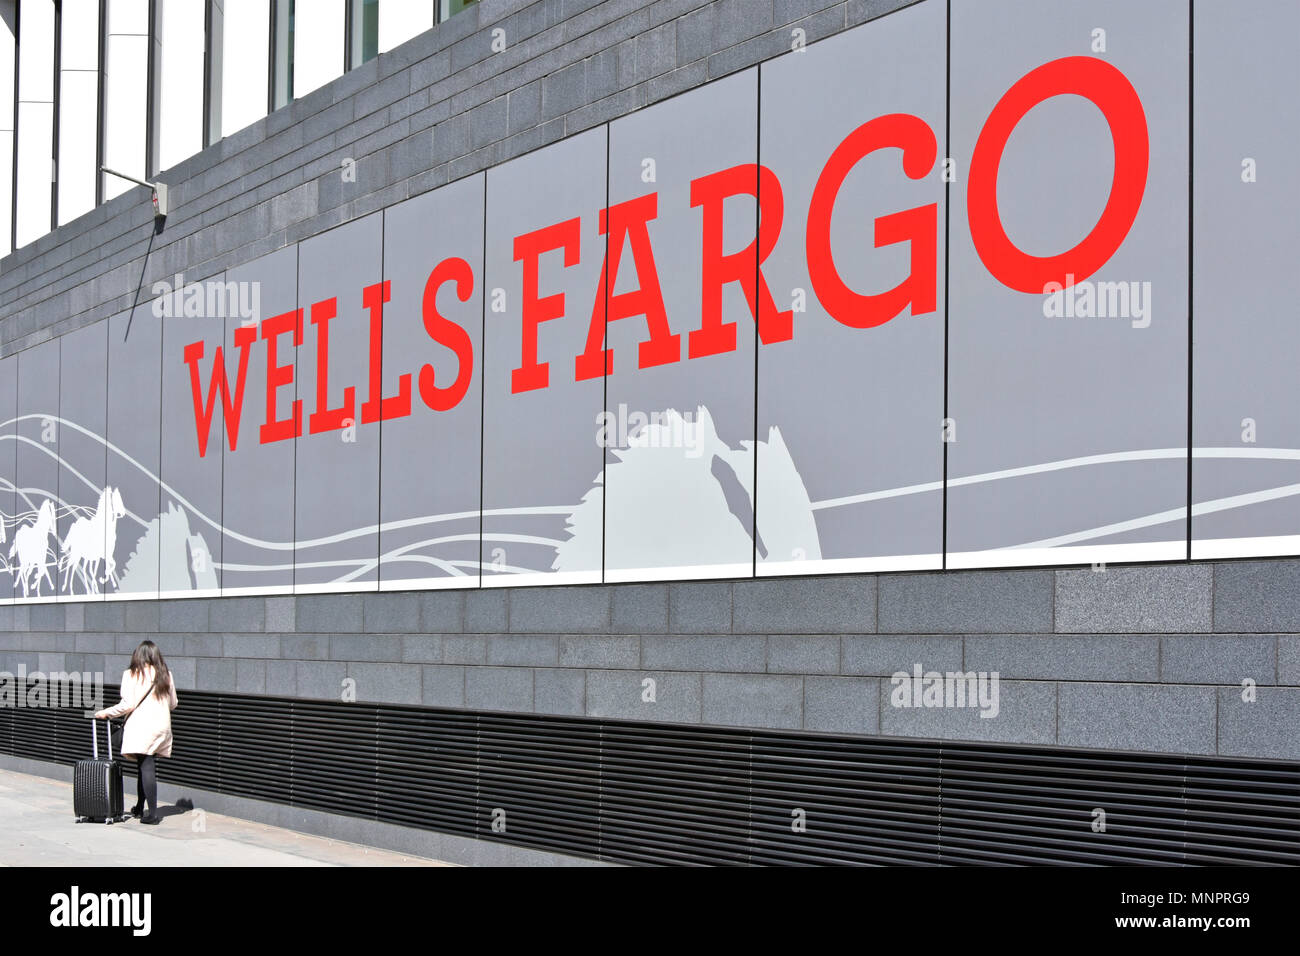 Zeichen an der Basis der neuen Wells Fargo Bank & Financial Services Business neuen Build landmark Bürogebäude Fassade Europäischer Hauptsitz der Stadt London, Großbritannien Stockfoto